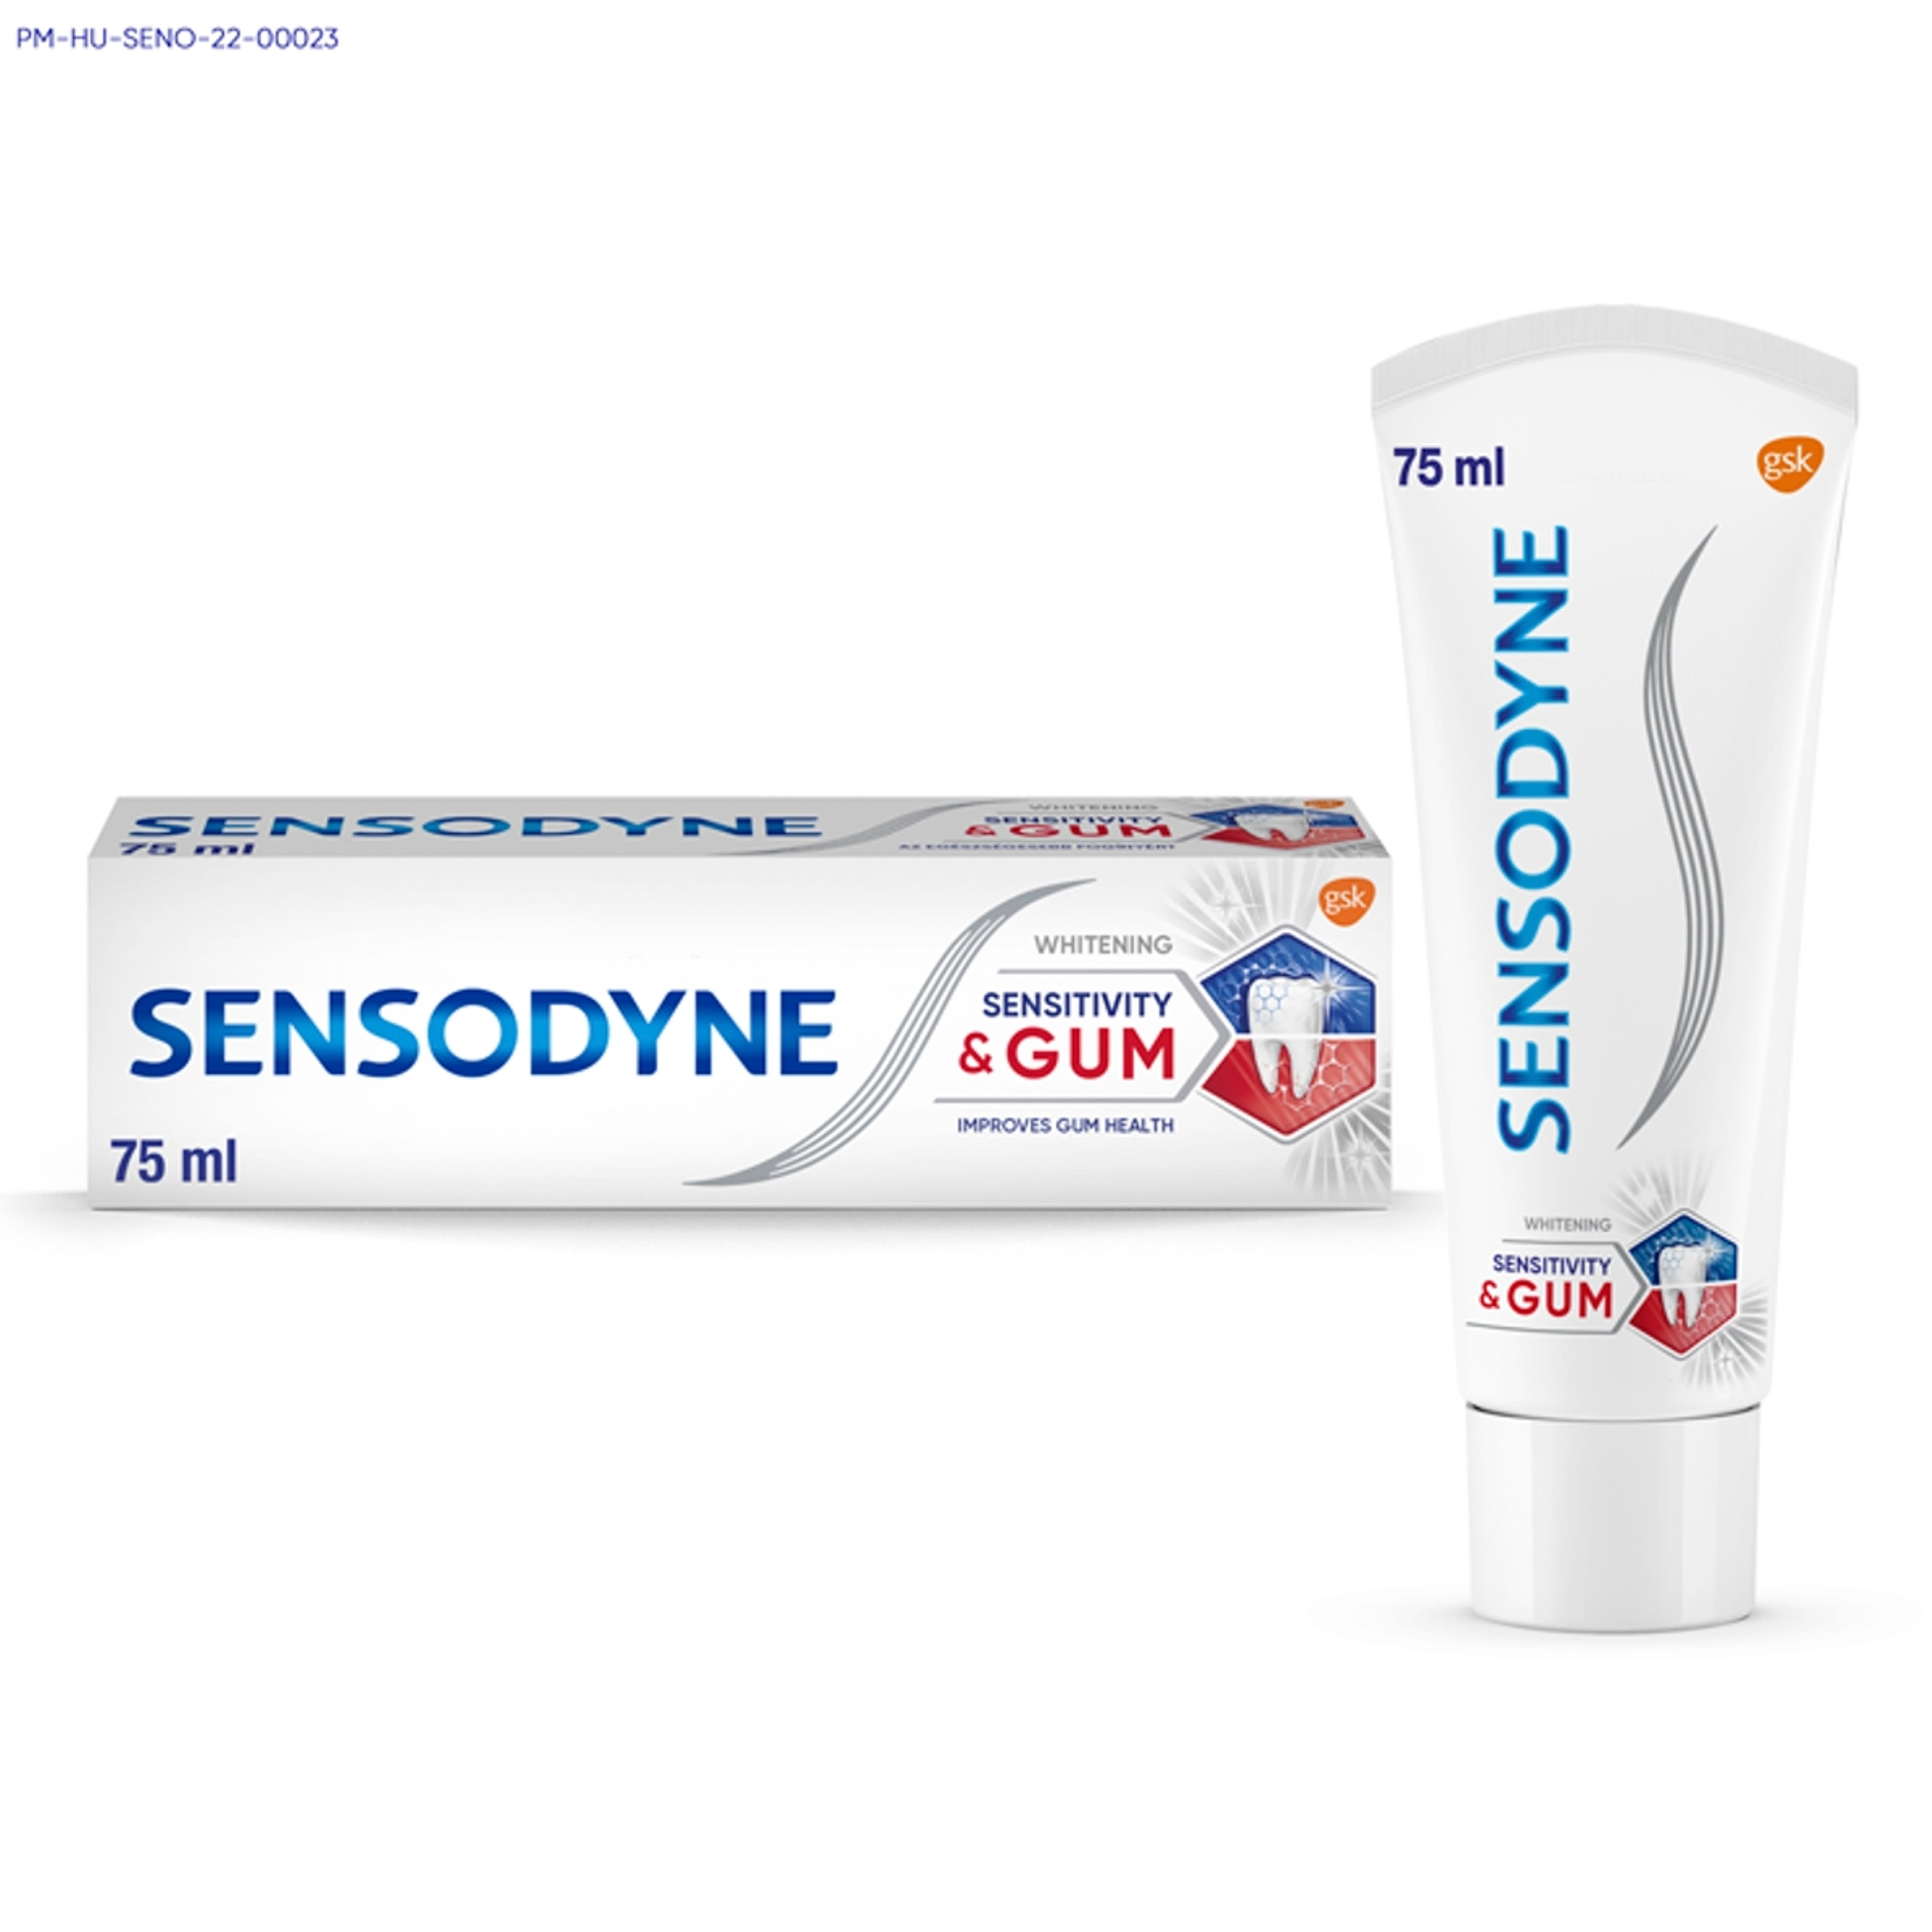 Sensodyne Sensitivity & Gum Whitening fogkrém - 75 ml-2